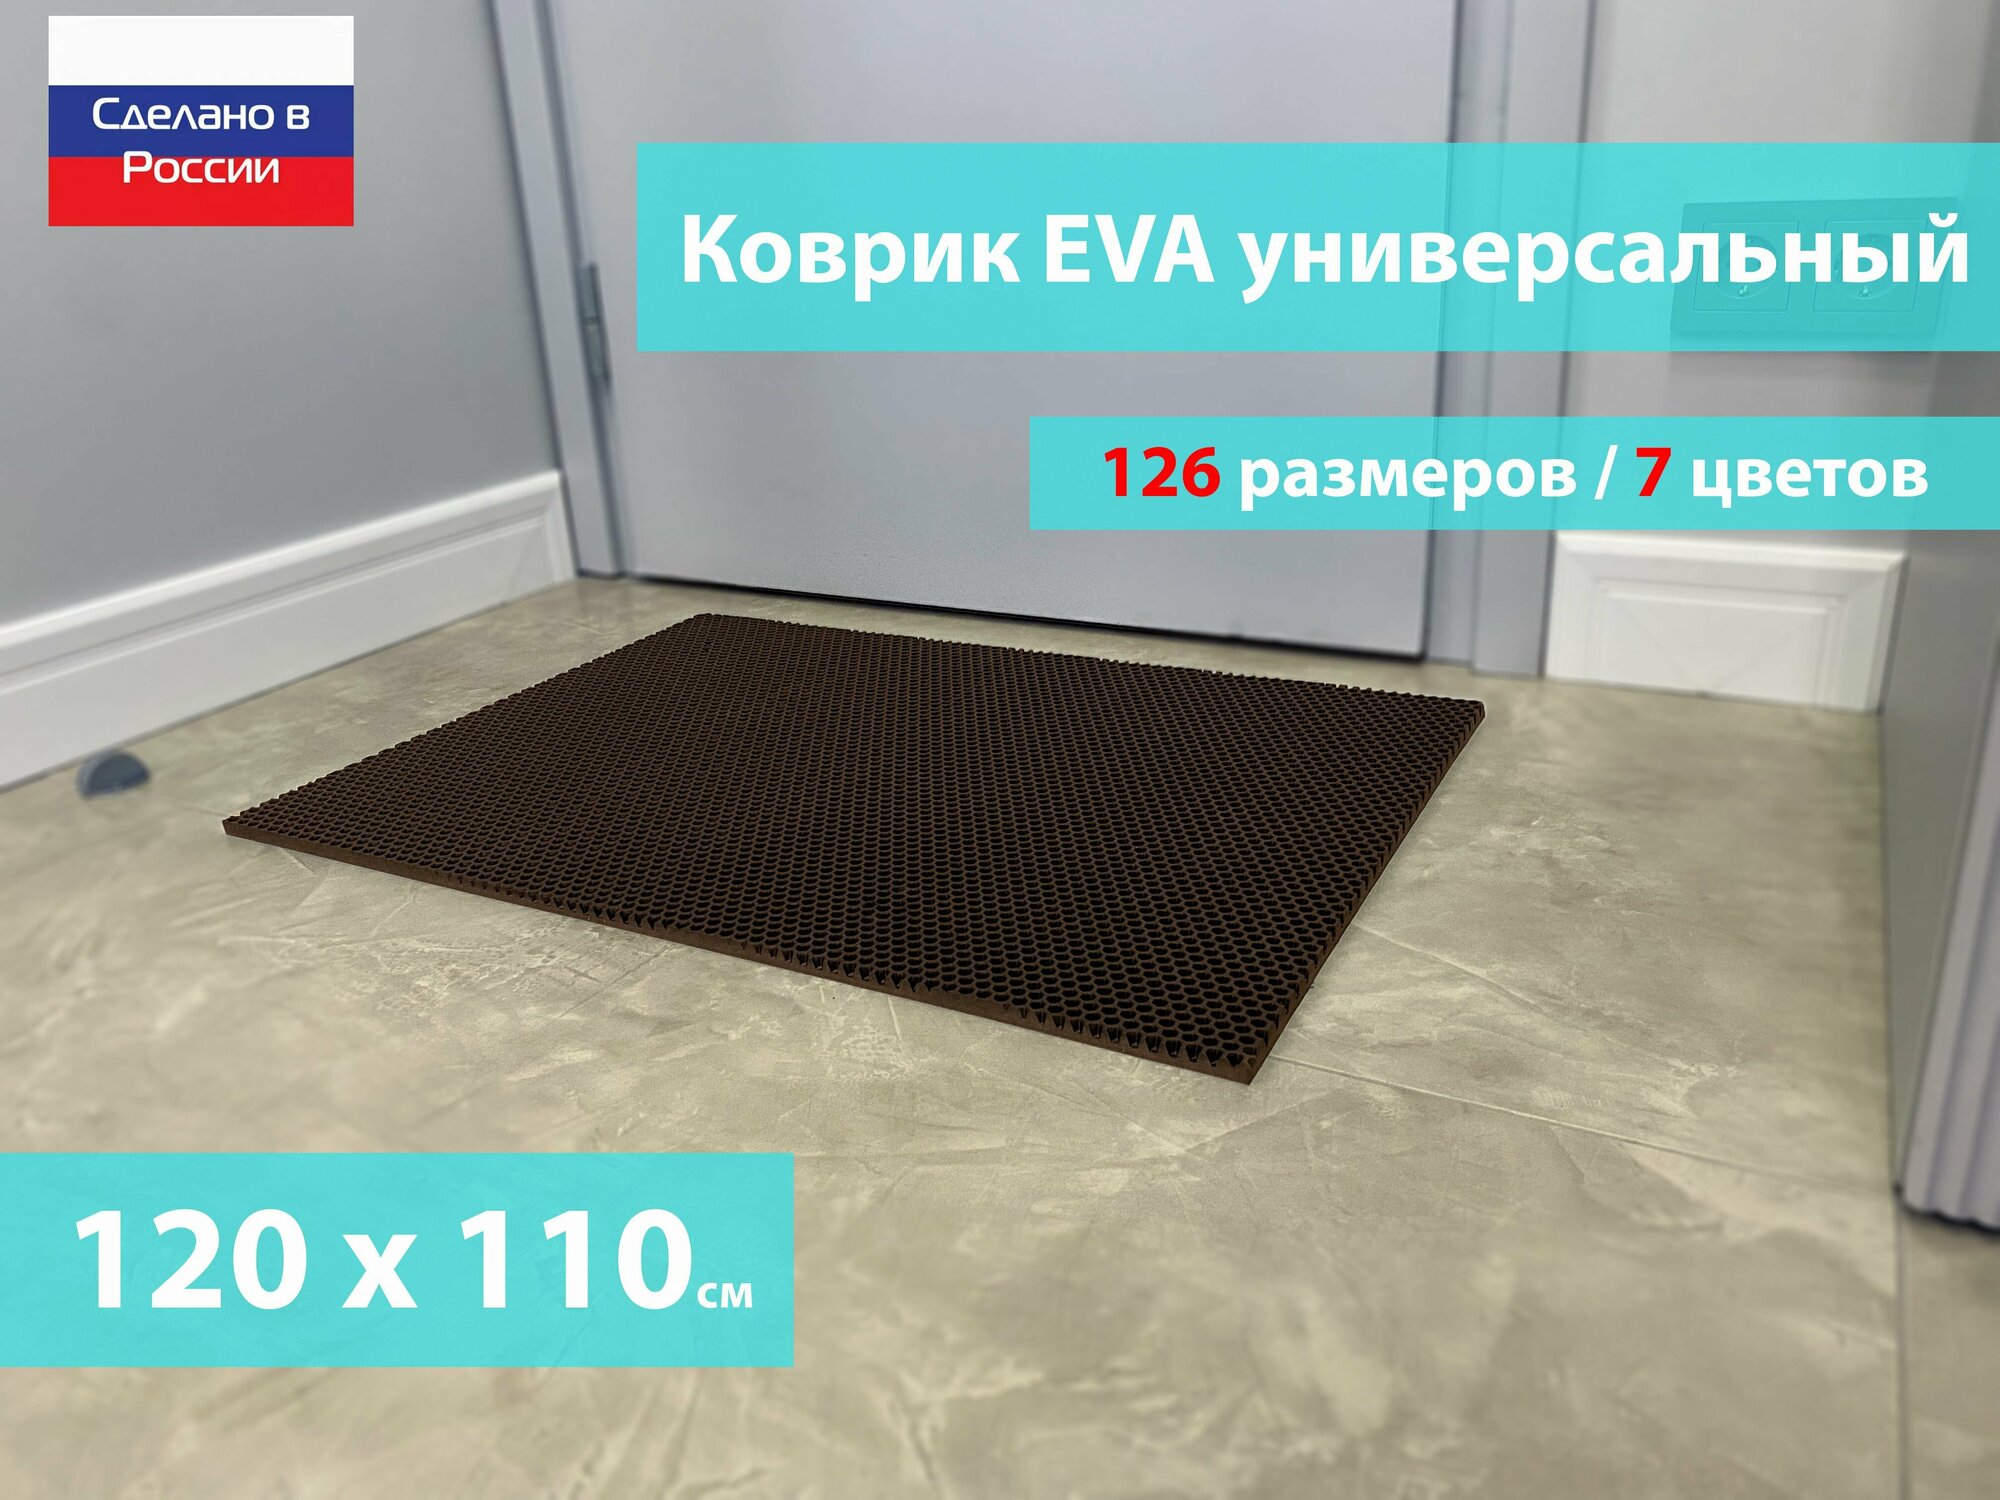 Коврик придверный EVA (ЕВА) в прихожую для обуви / Ковер ЭВА на пол перед дверью/ коричневый / размер 120 х 110 см